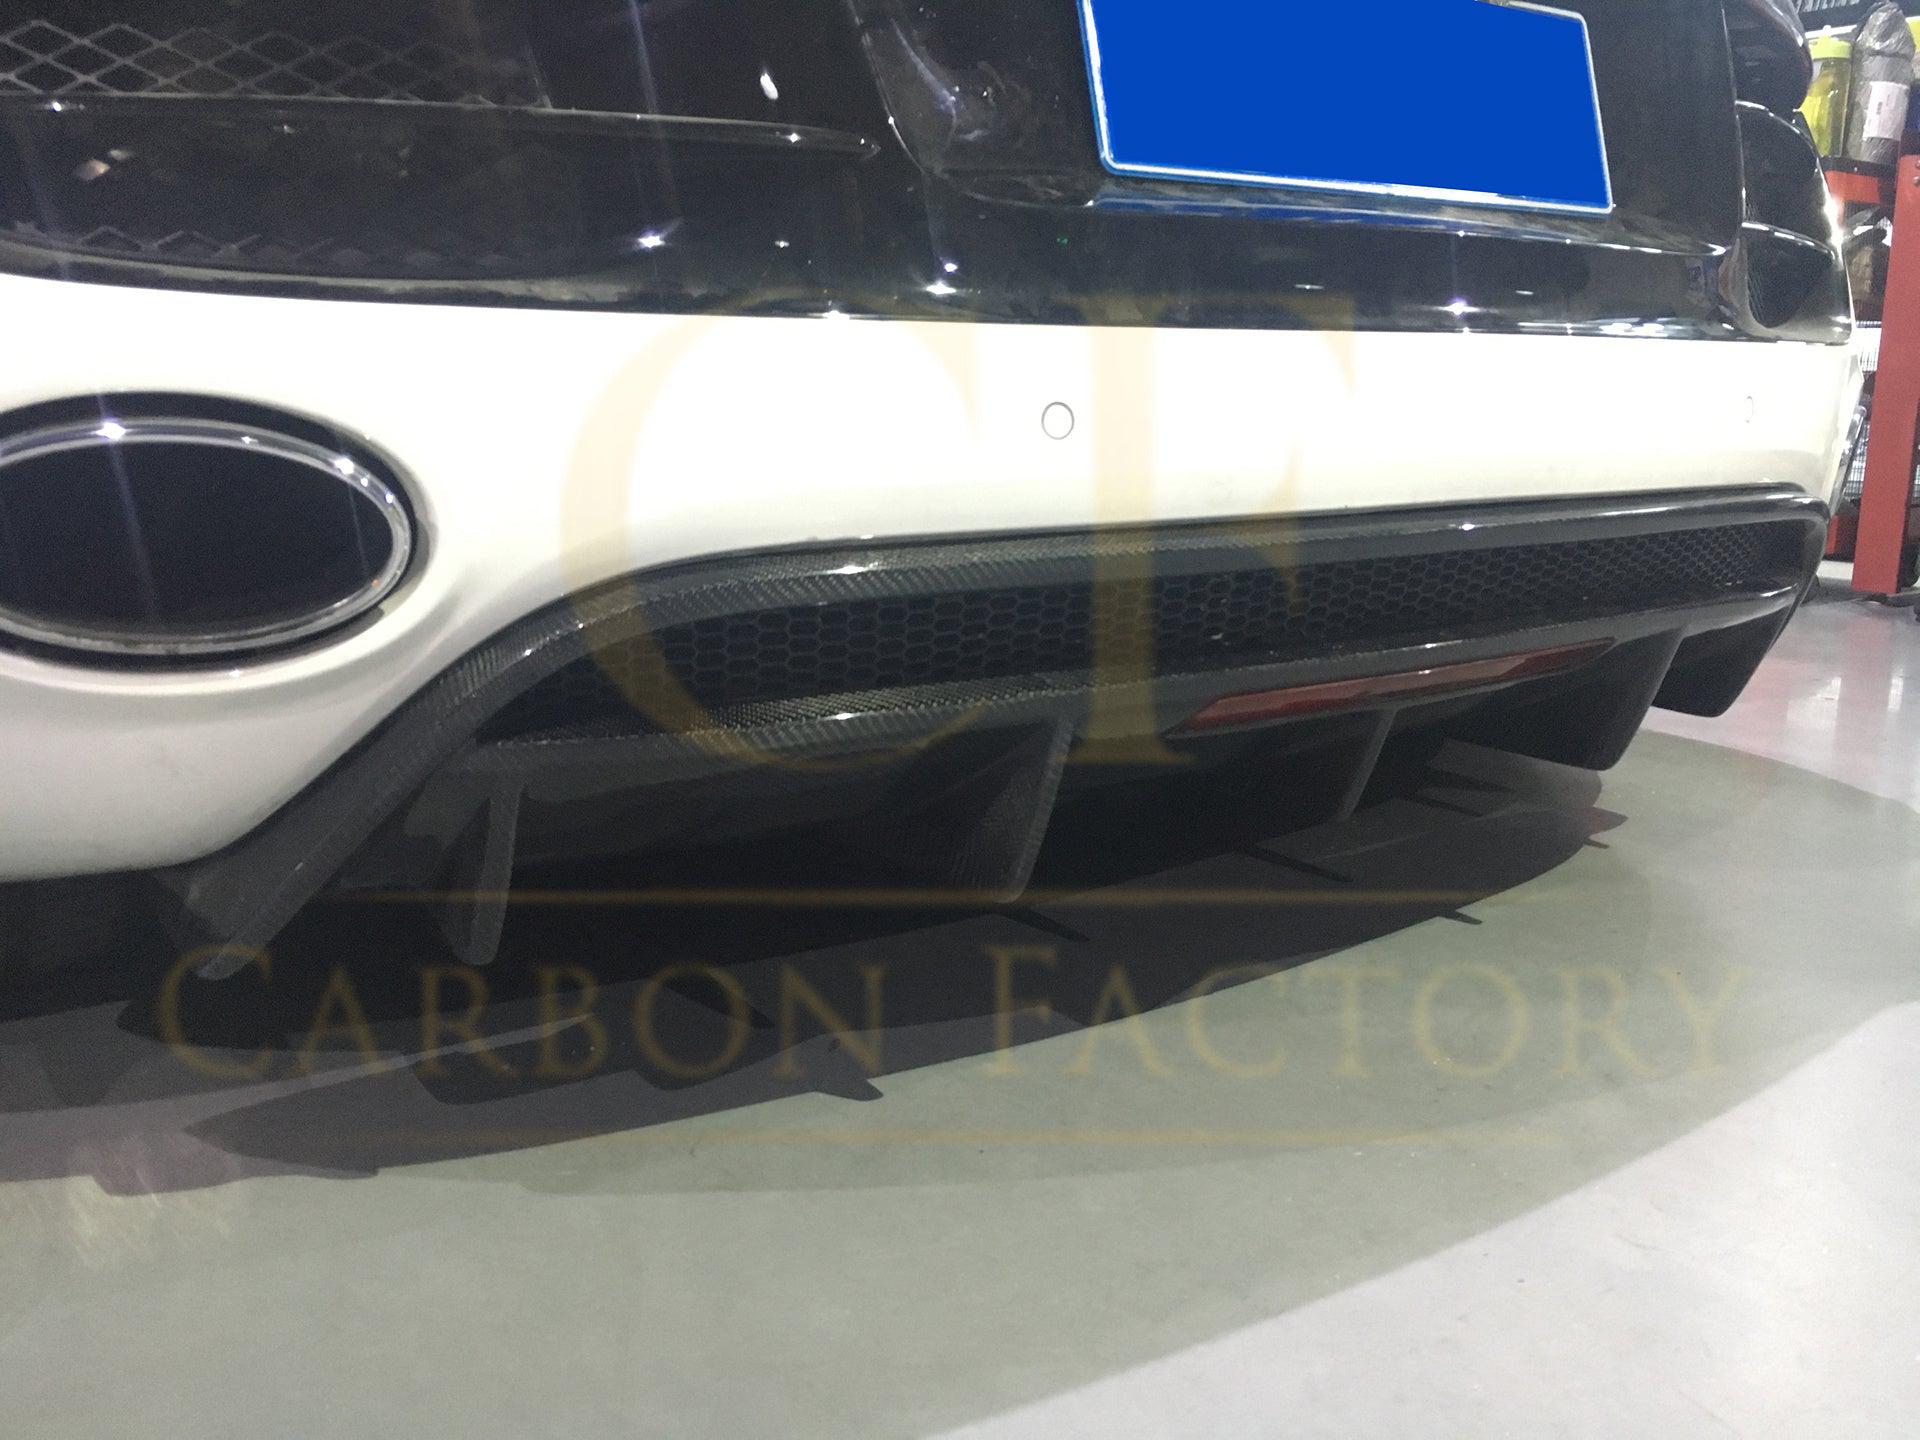 Audi R8 Gen 1 Carbon Fibre V Style Rear Diffuser 10-15-Carbon Factory